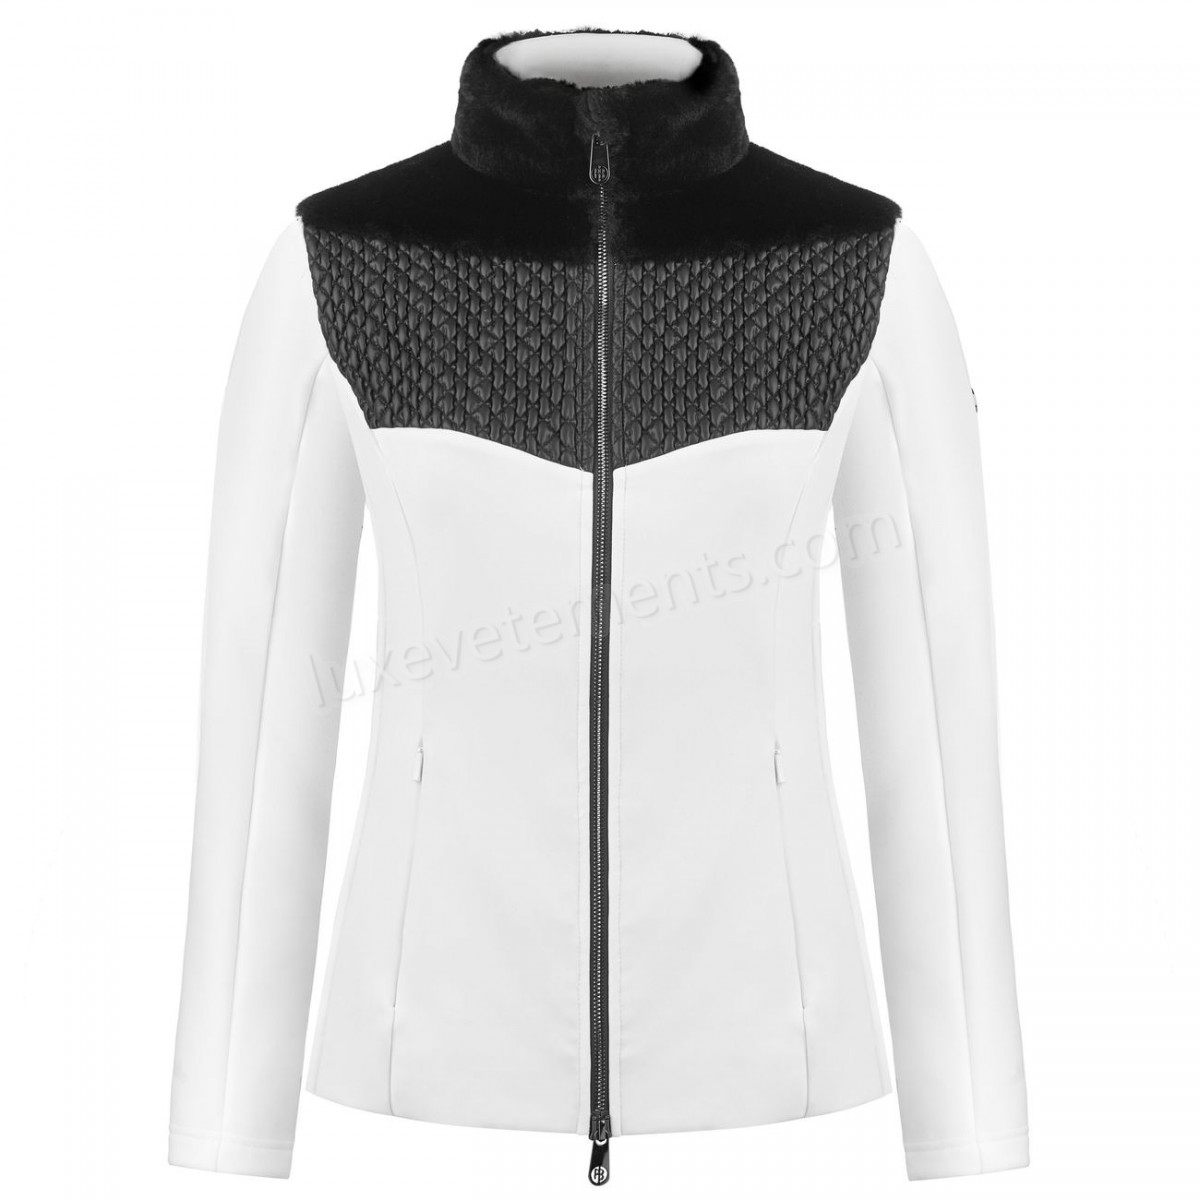 Poivre Blanc-Sports d'hiver femme POIVRE BLANC Veste En Polaire Poivre Blanc Hybrid Stretch Fleece Jacket 1600 Multico White Femme Vente en ligne - -1